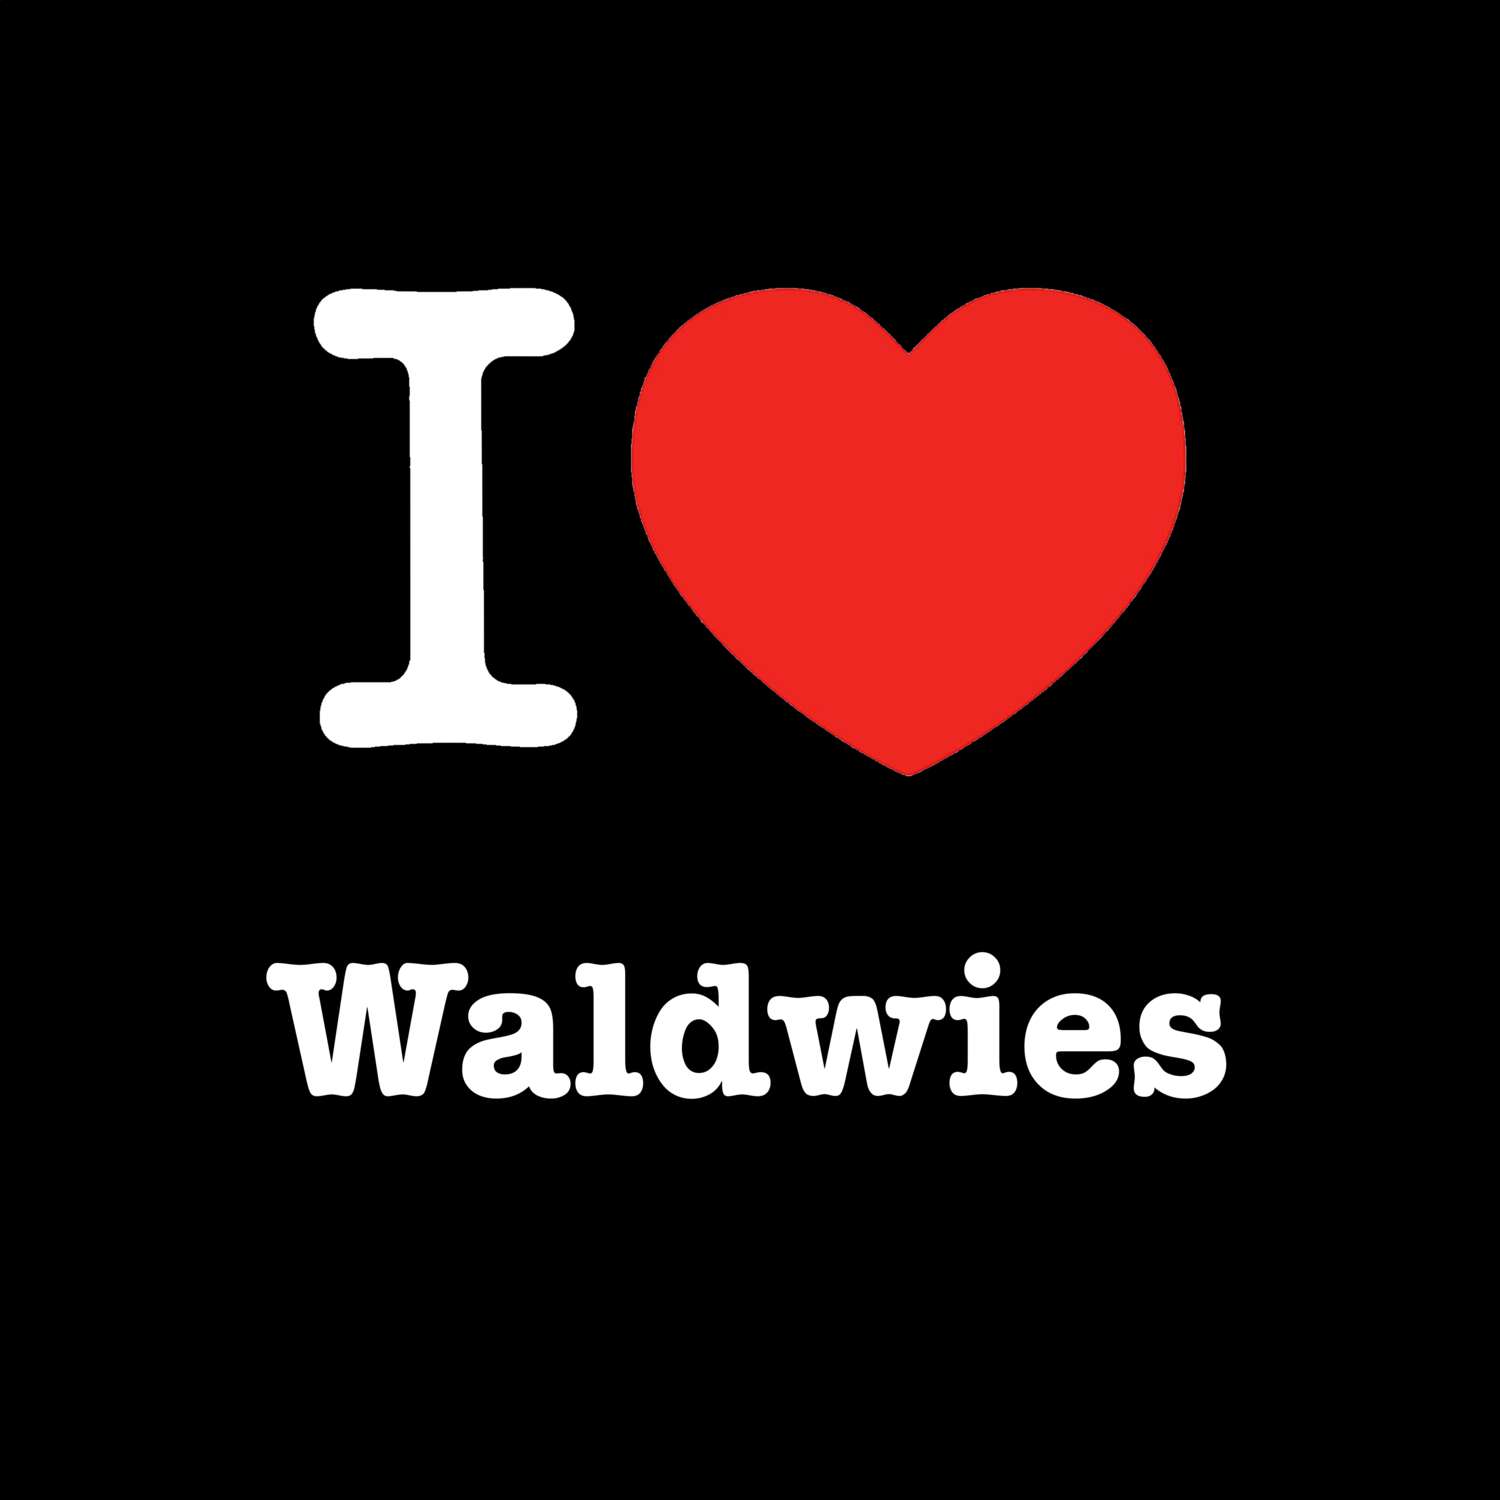 Waldwies T-Shirt »I love«